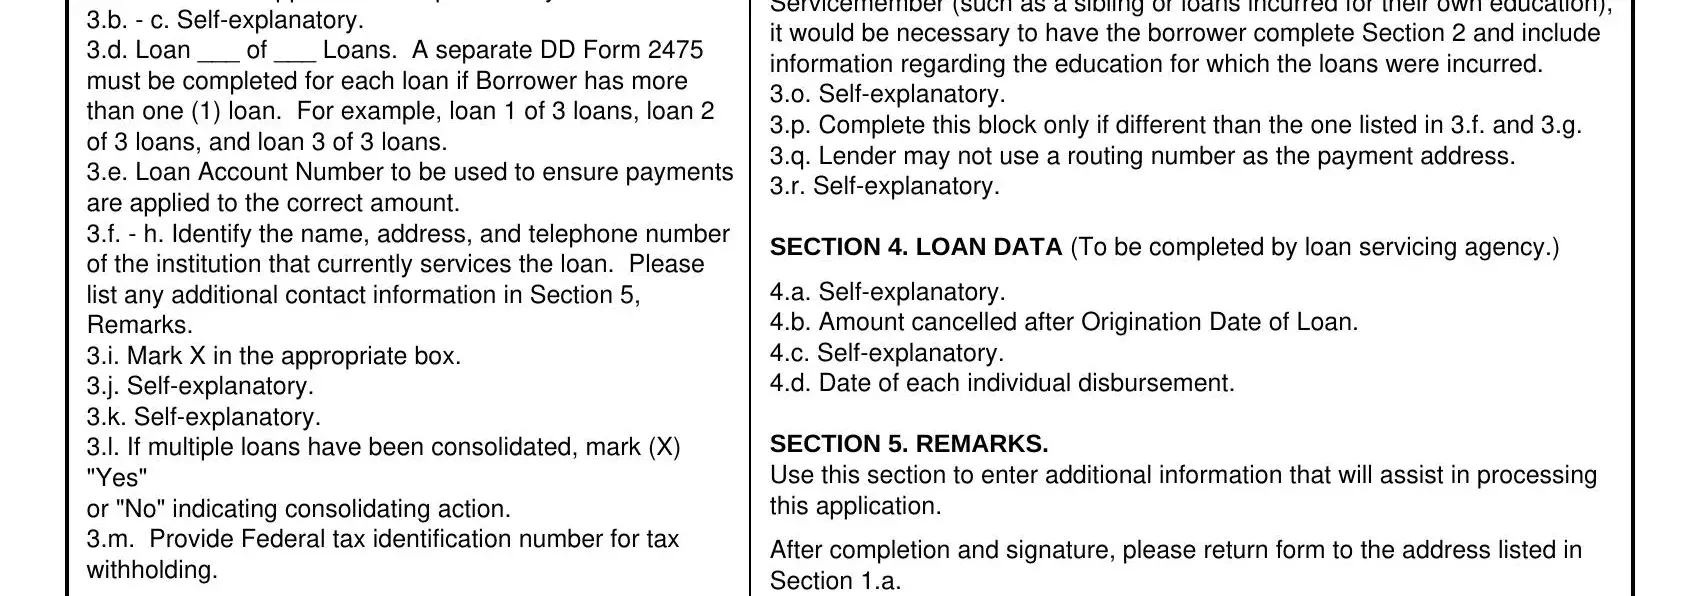 dd 2475 loan repayment program SECTION 3 fields to fill